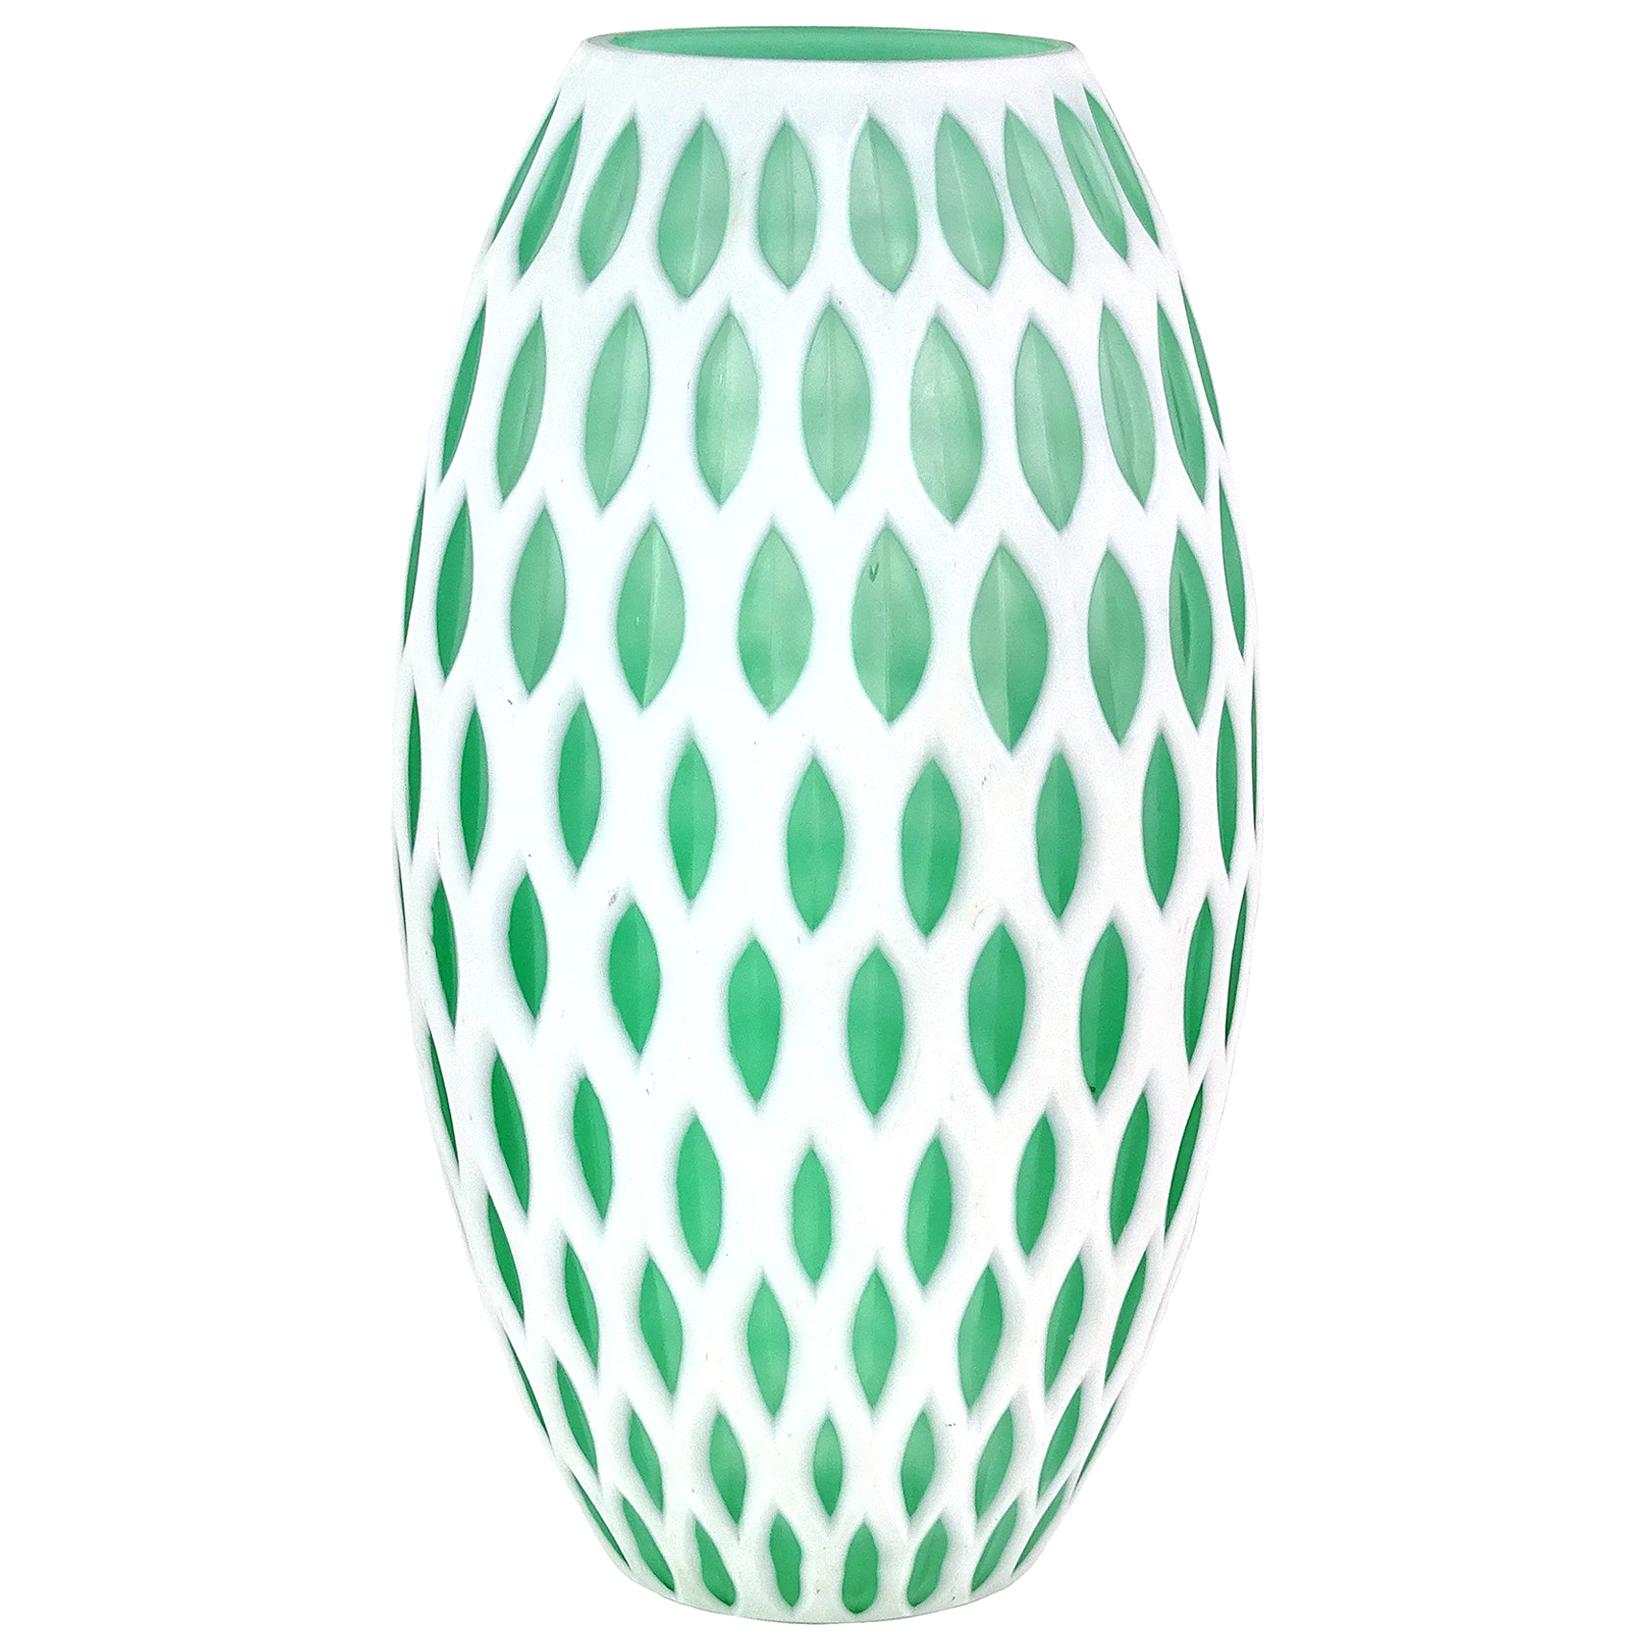 Murano Modern Carved White Green Italian Art Glass Sculptural Flower Vase